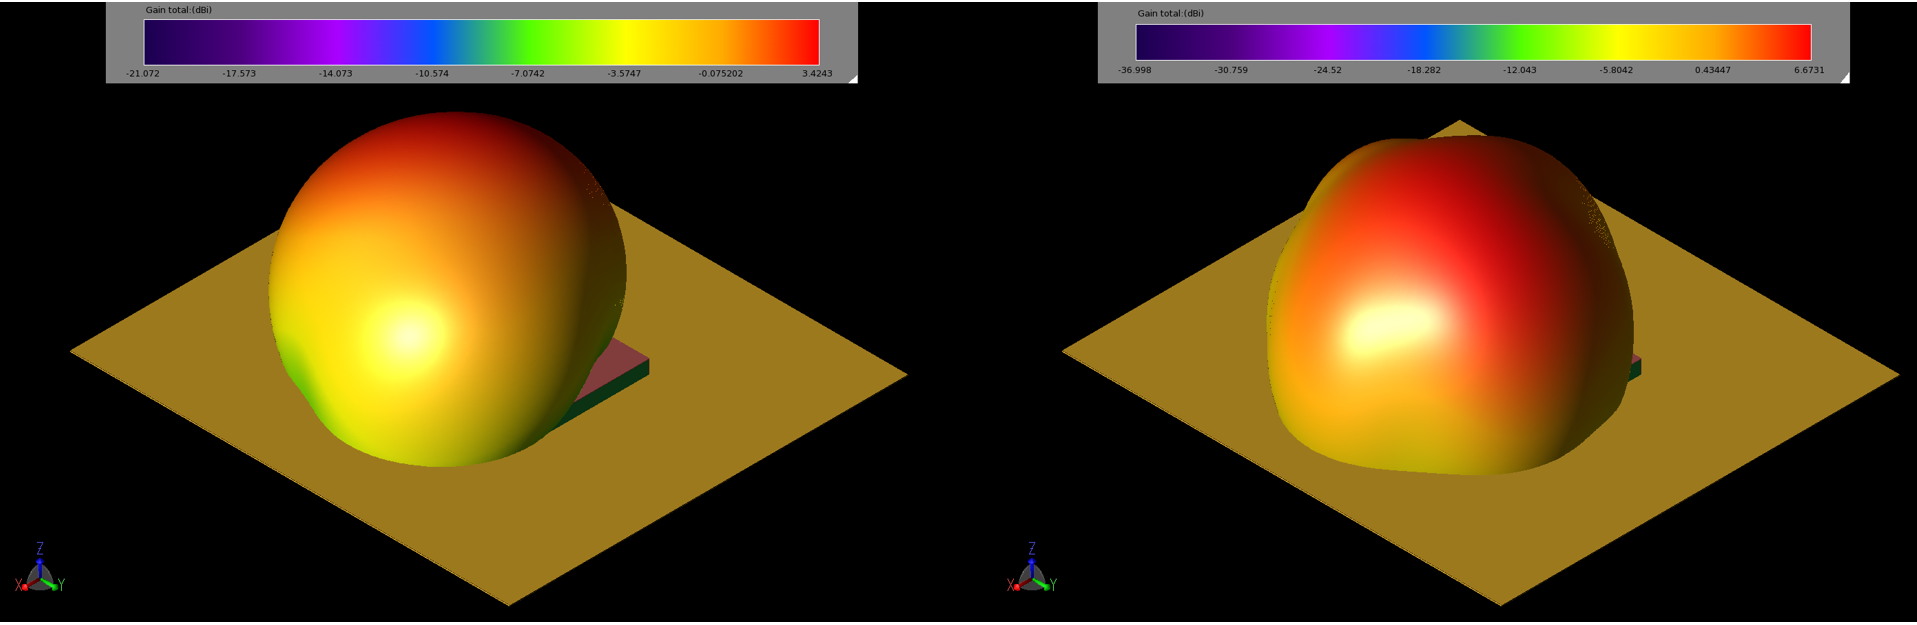 図4：2.45GHz（左、4a）と5.5GHz（右、4b）におけるパッチの利得パターンは球形で、利得のピーク値はそれぞれ3.4dBiと6.7dBiである。